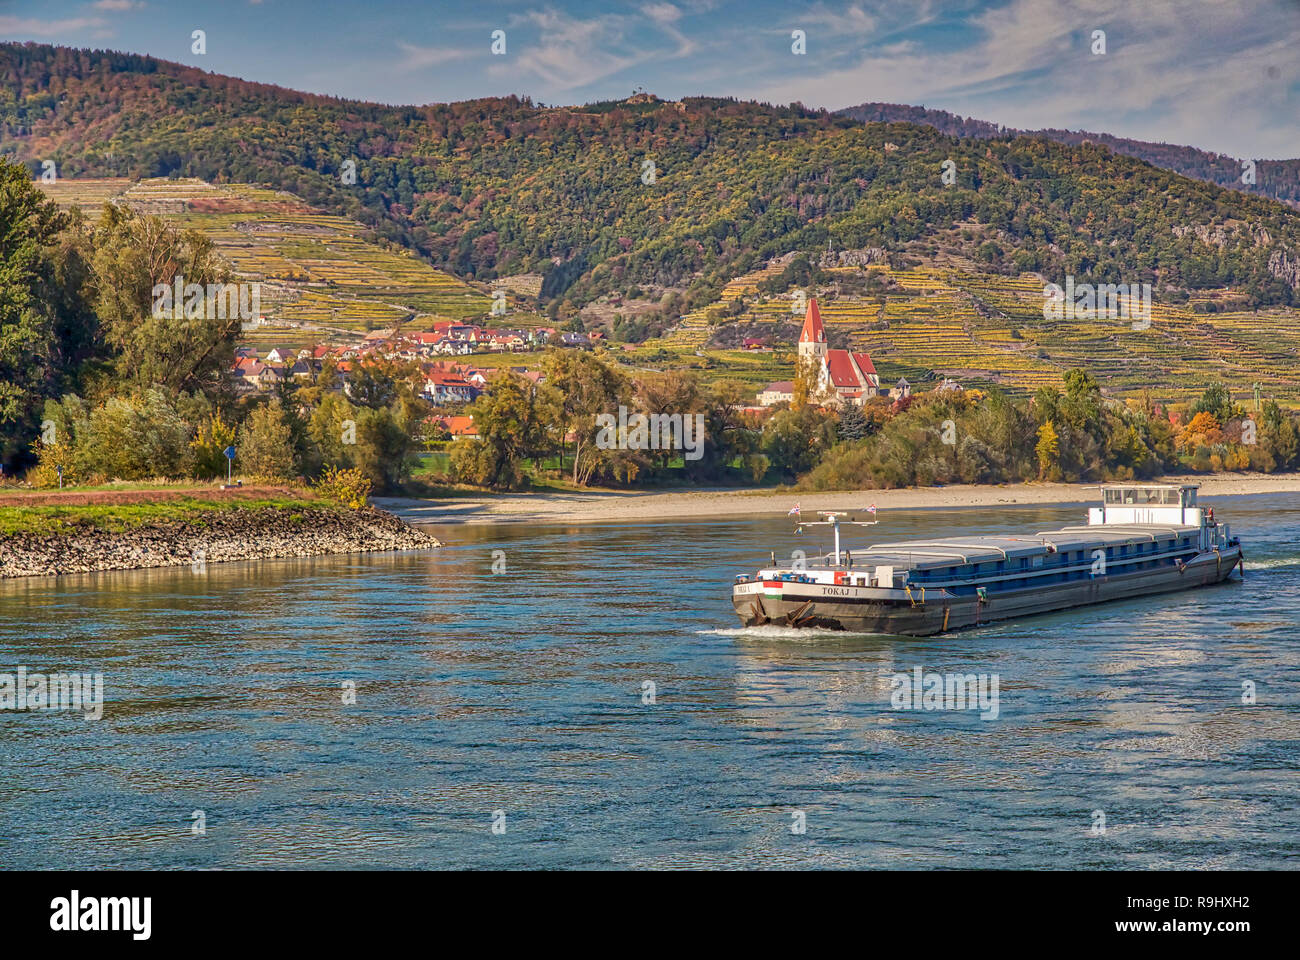 Barge on Wachau Valley, Austria Stock Photo